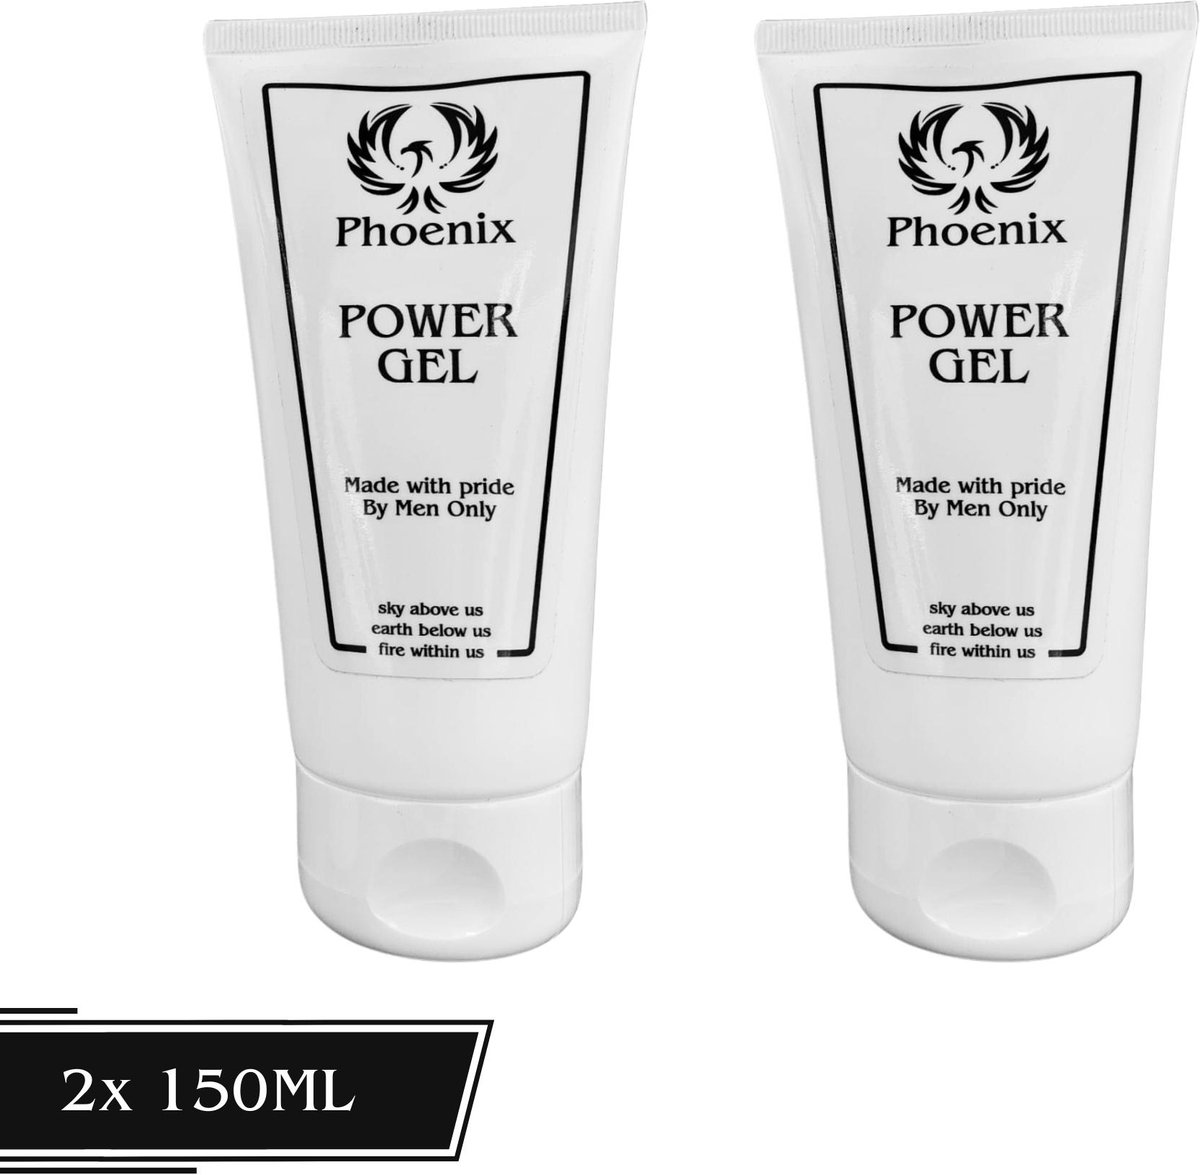 Phoenix Hair Products - Haar Gel - 2X 150ML - Sterke Hold - Heerlijke Geur - Unieke Formule